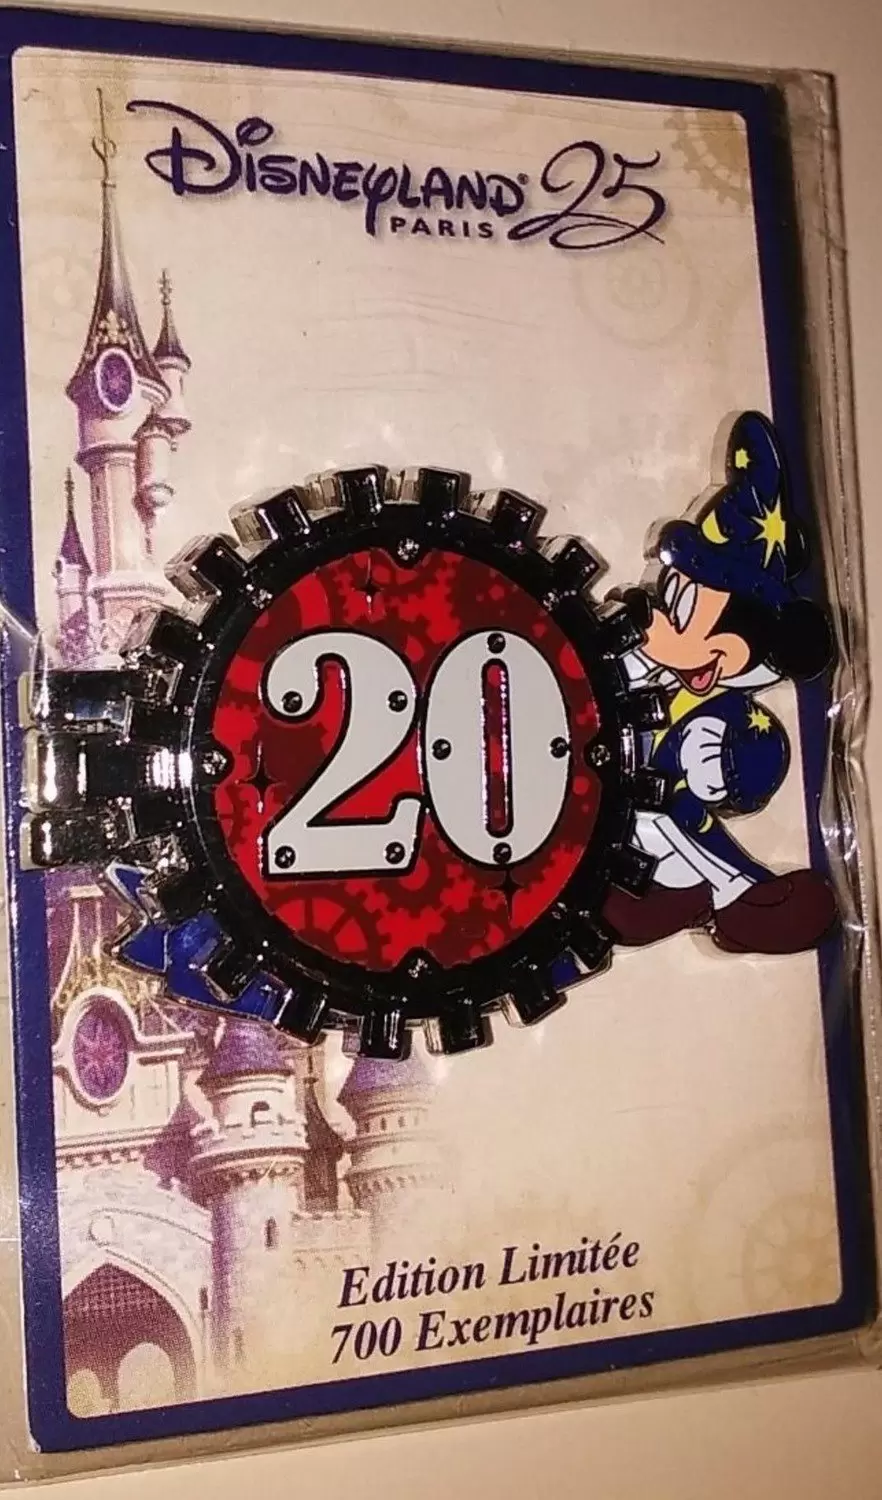 Countdown 25 Years - 20th Anniversary